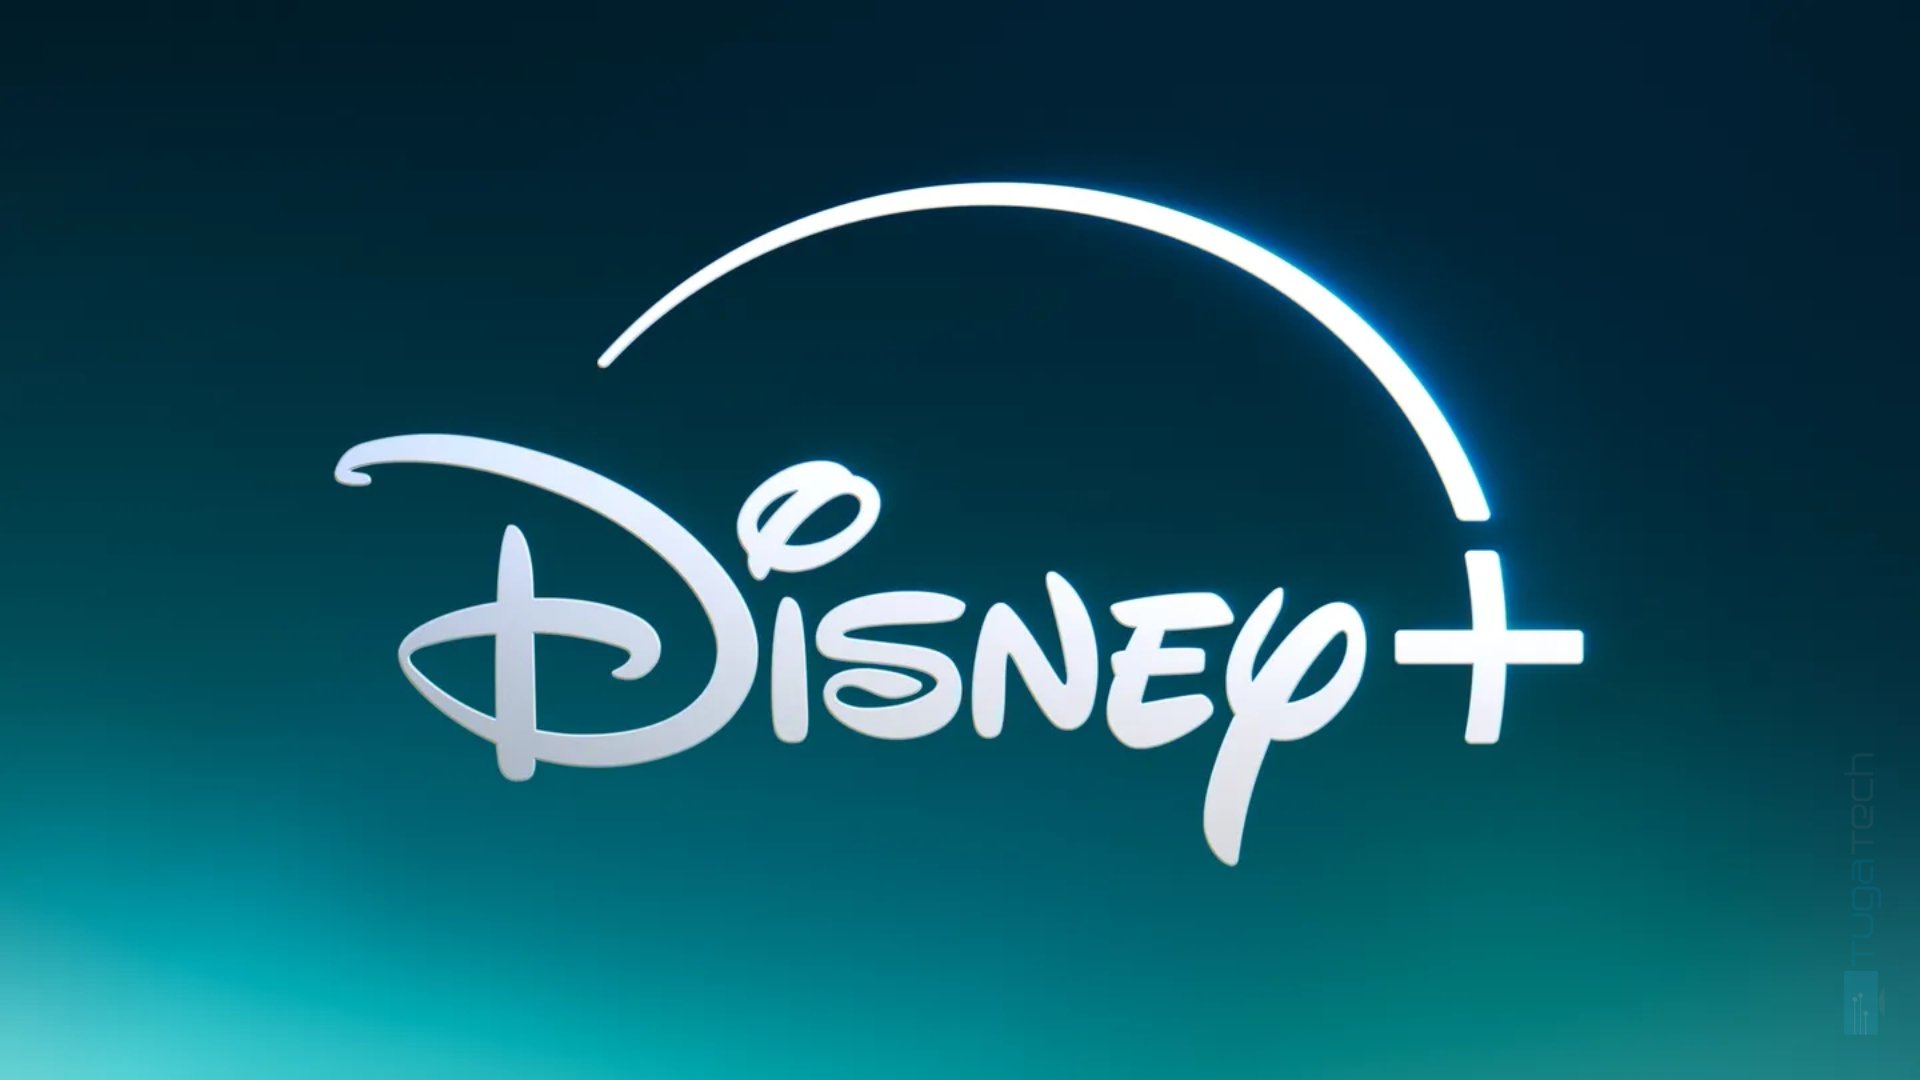 Disney Plus possui um “novo” logotipo